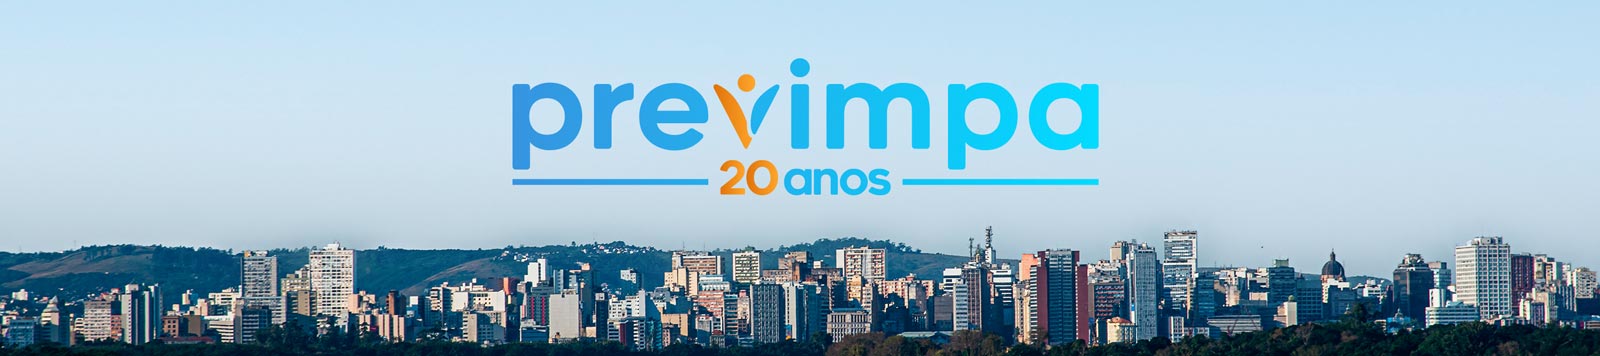 Previmpa 20 anos - Marca sobre vista panorâmica da cidade de Porto Alegre